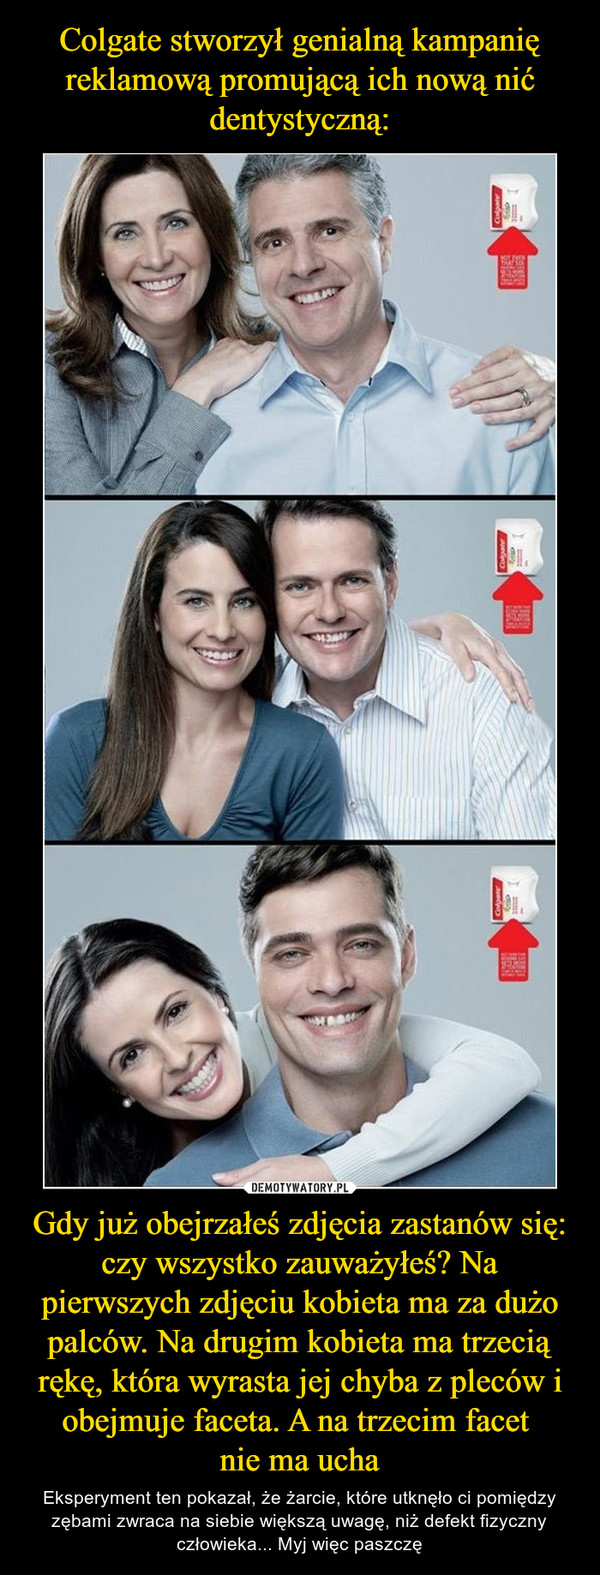 Colgate stworzył genialną kampanię reklamową promującą ich nową nić dentystyczną: Gdy już obejrzałeś zdjęcia zastanów się: czy wszystko zauważyłeś? Na pierwszych zdjęciu kobieta ma za dużo palców. Na drugim kobieta ma trzecią rękę, która wyrasta jej chyba z pleców i obejmuje faceta. A na trzecim facet 
nie ma ucha